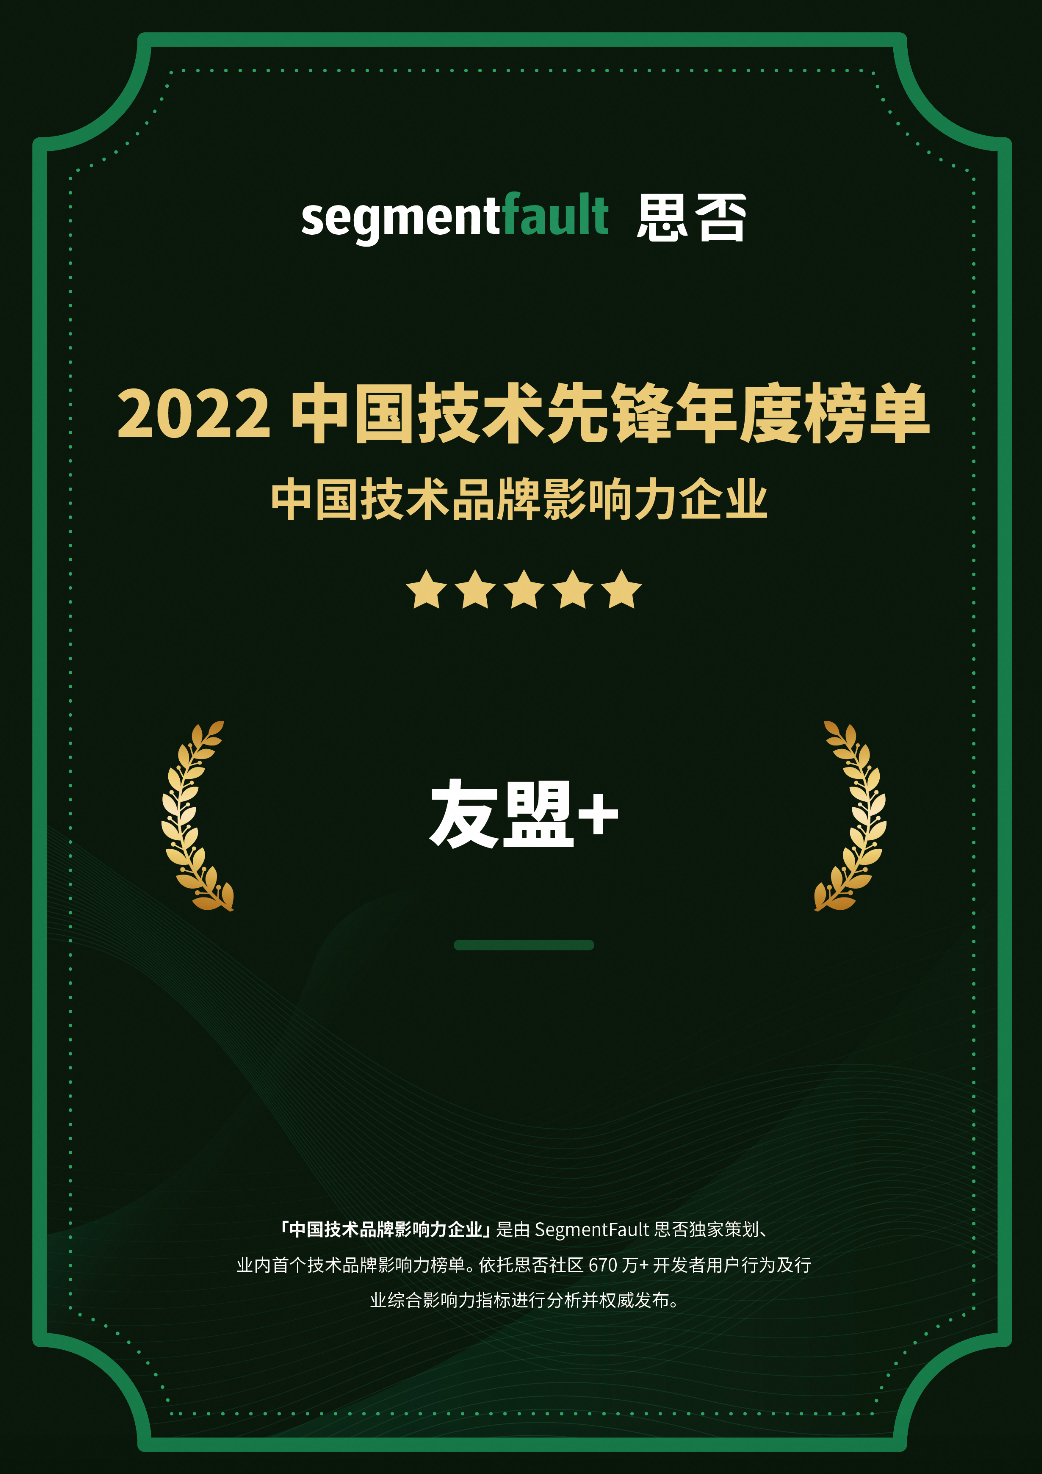 “2022 中国技术先锋年度榜单”中国技术品牌影响力企业